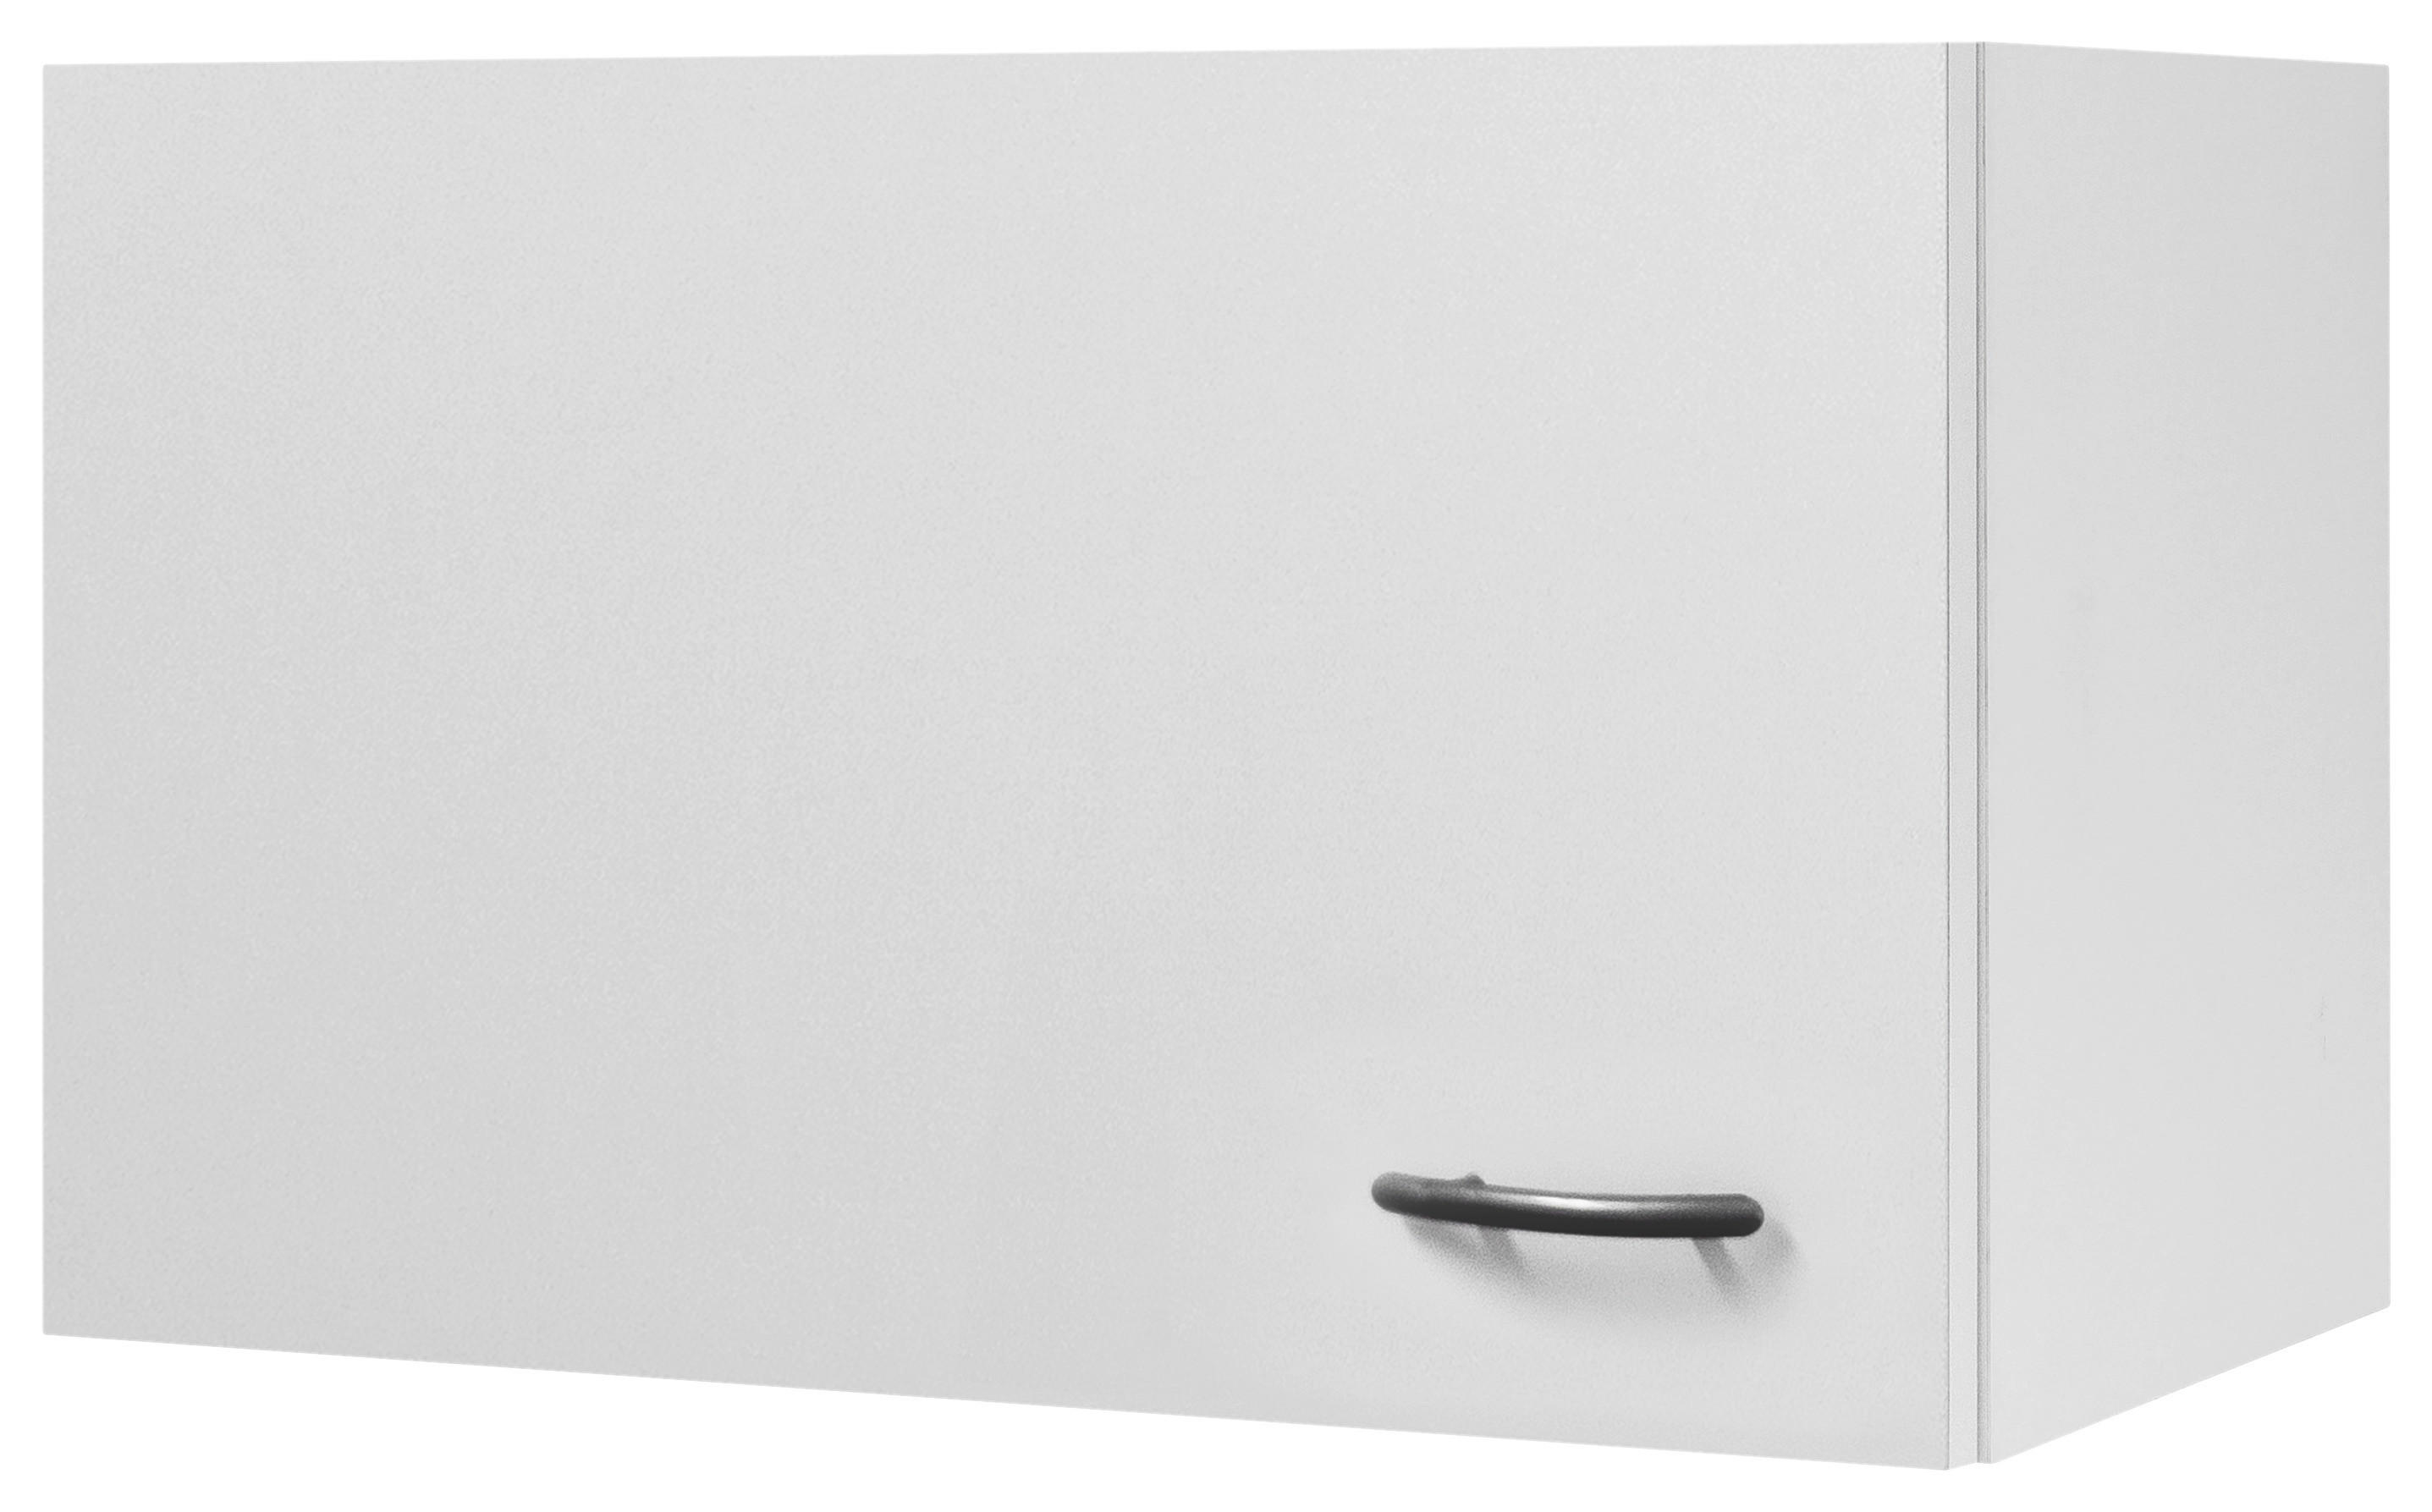 Küchenoberschrank in Weiß 60 cm breit kaufen